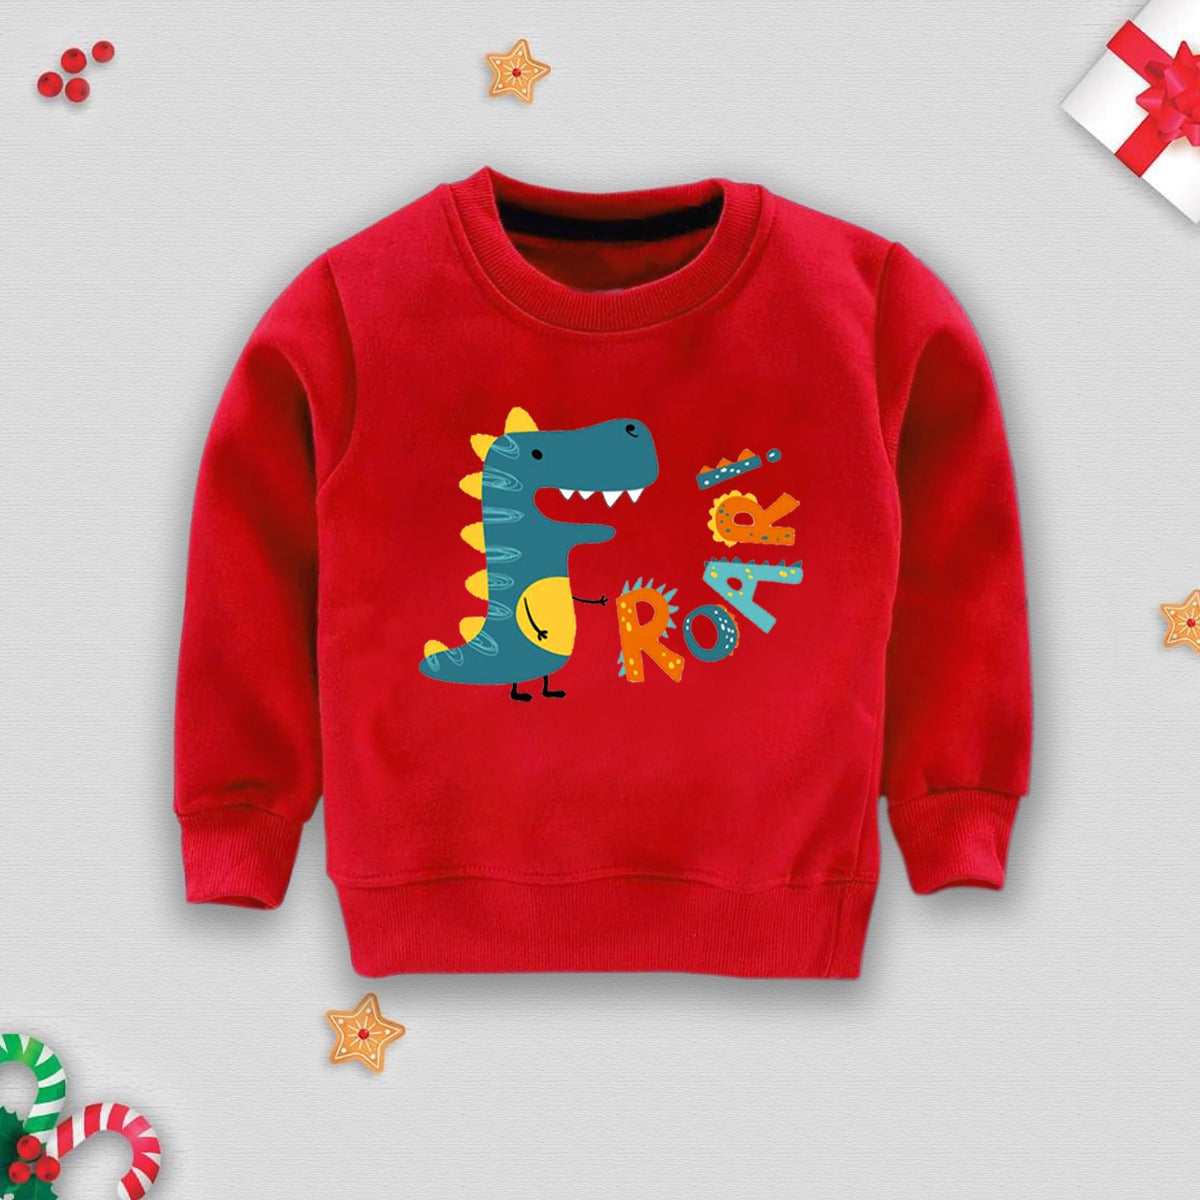 BNBSWS-39 - Sweatshirt for Kids - Roar - Red